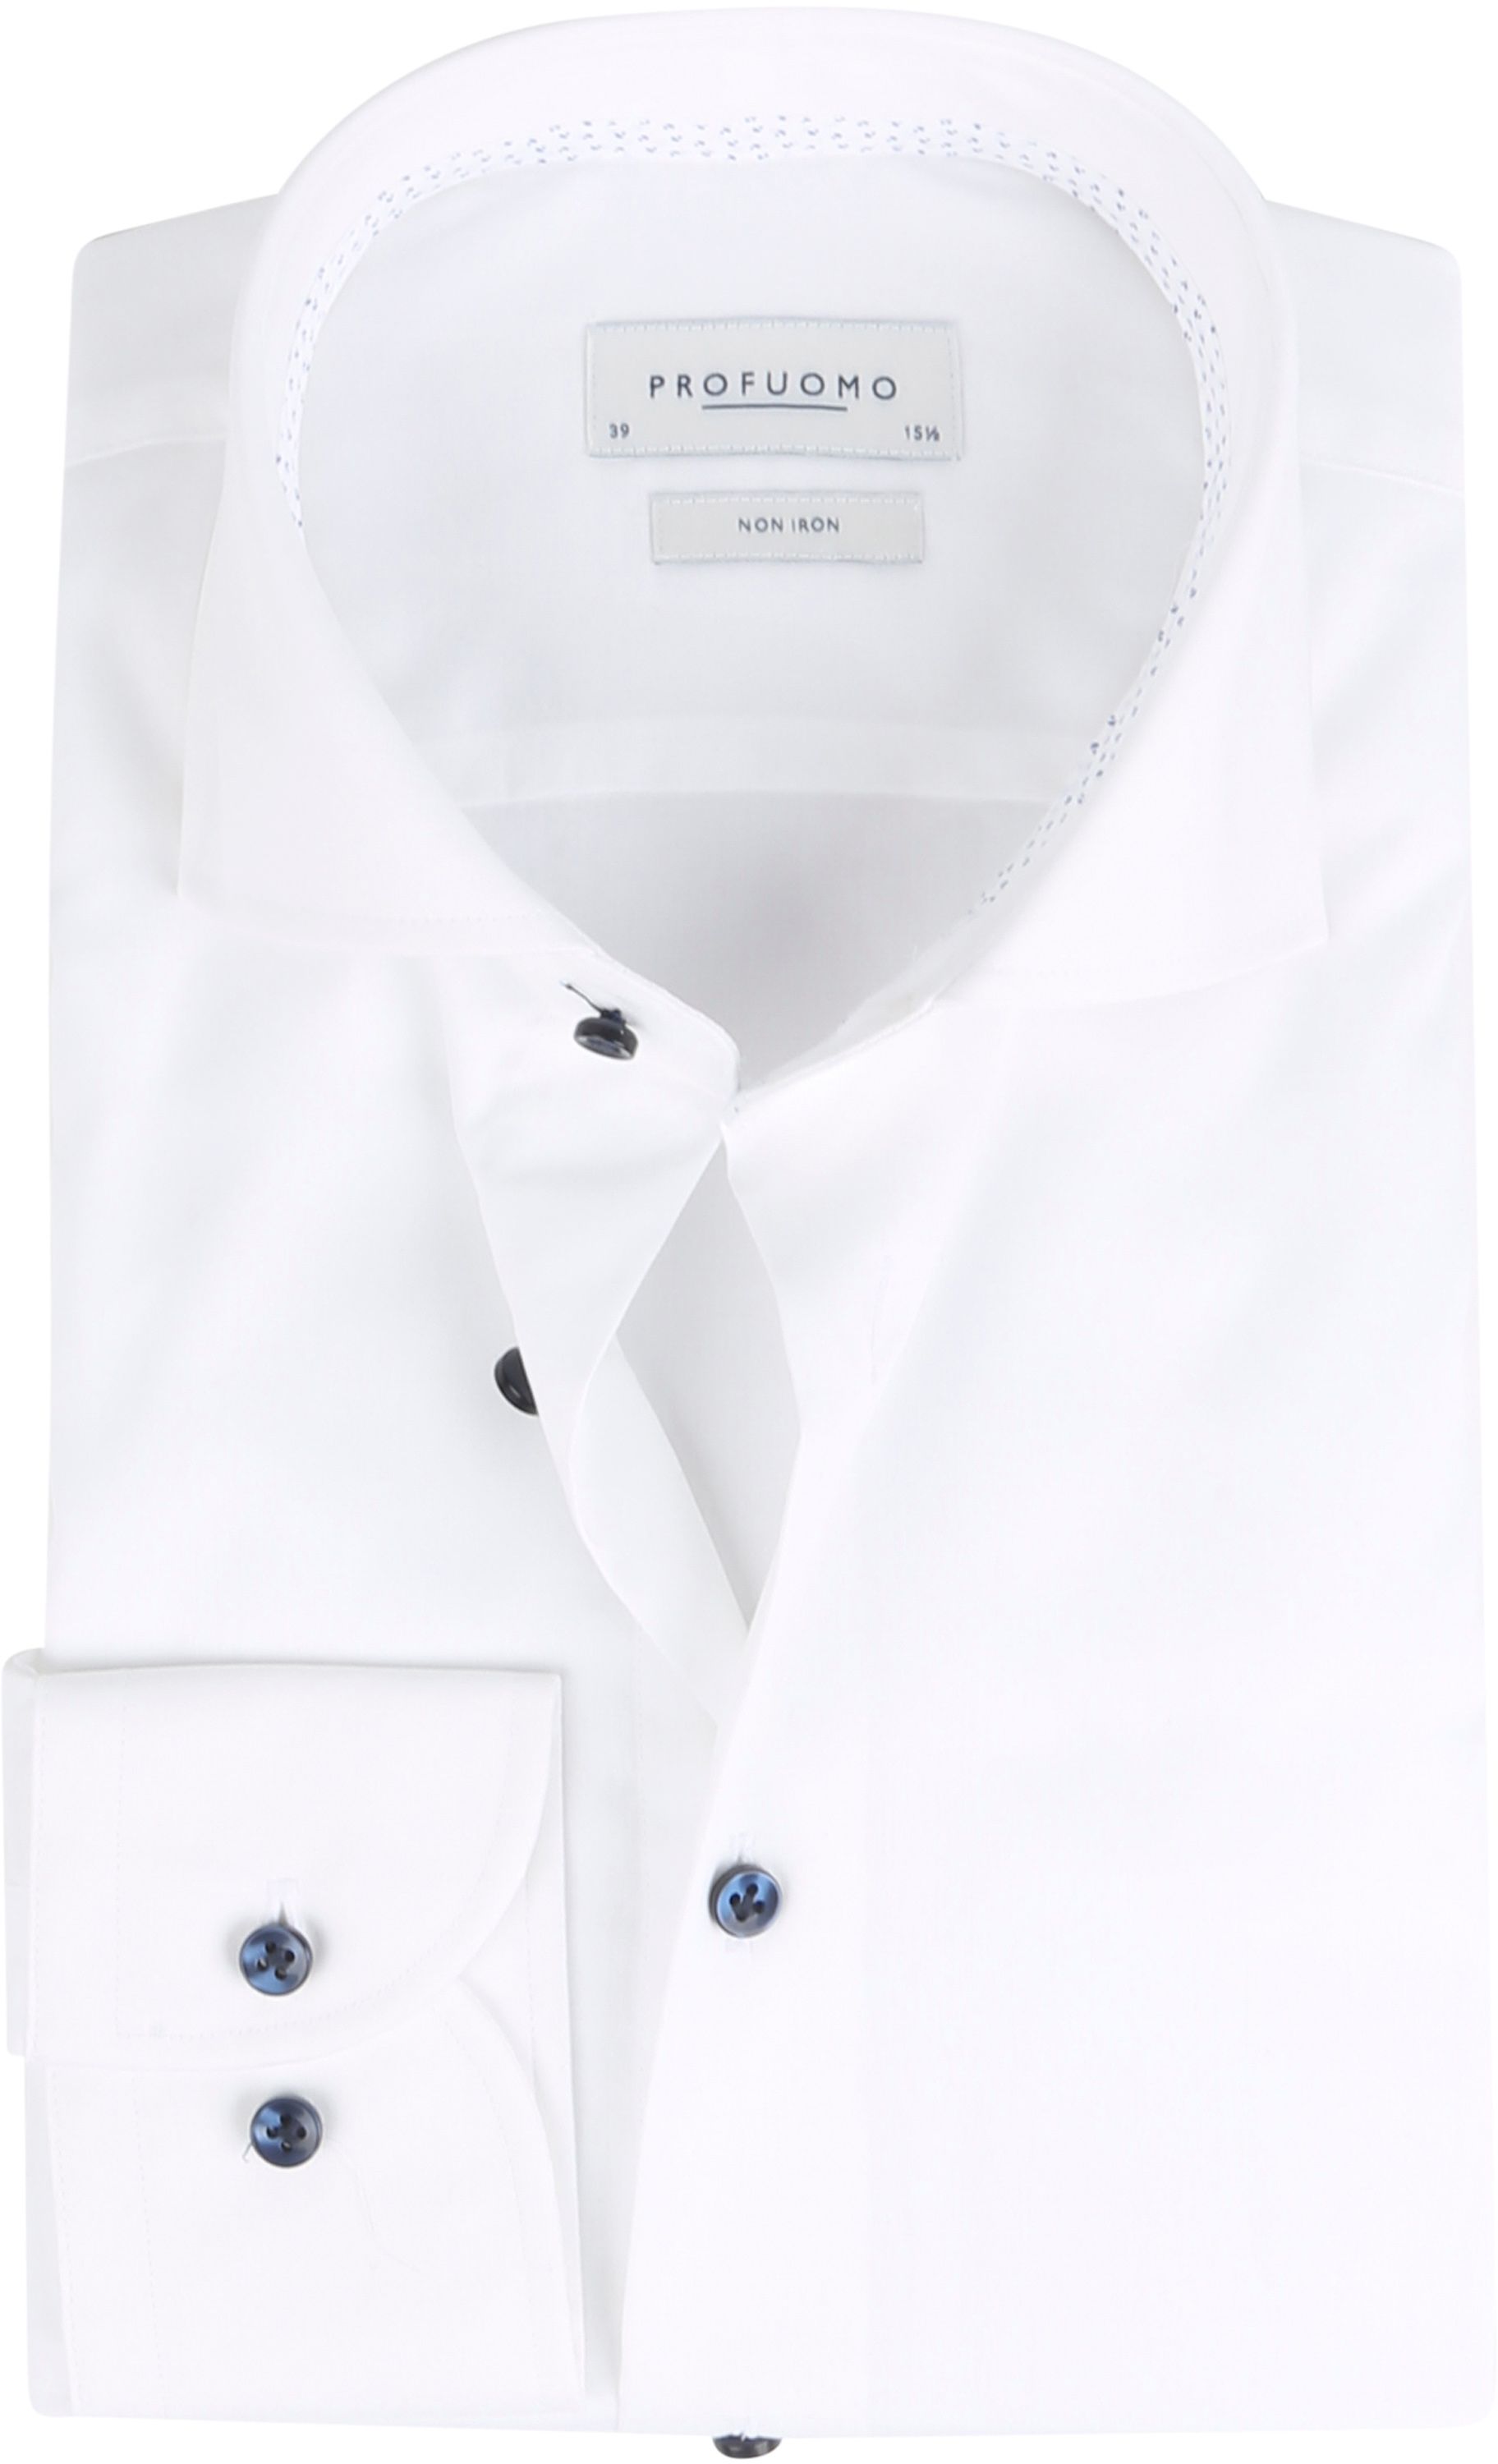 Profuomo Travel Shirt White size 14.5